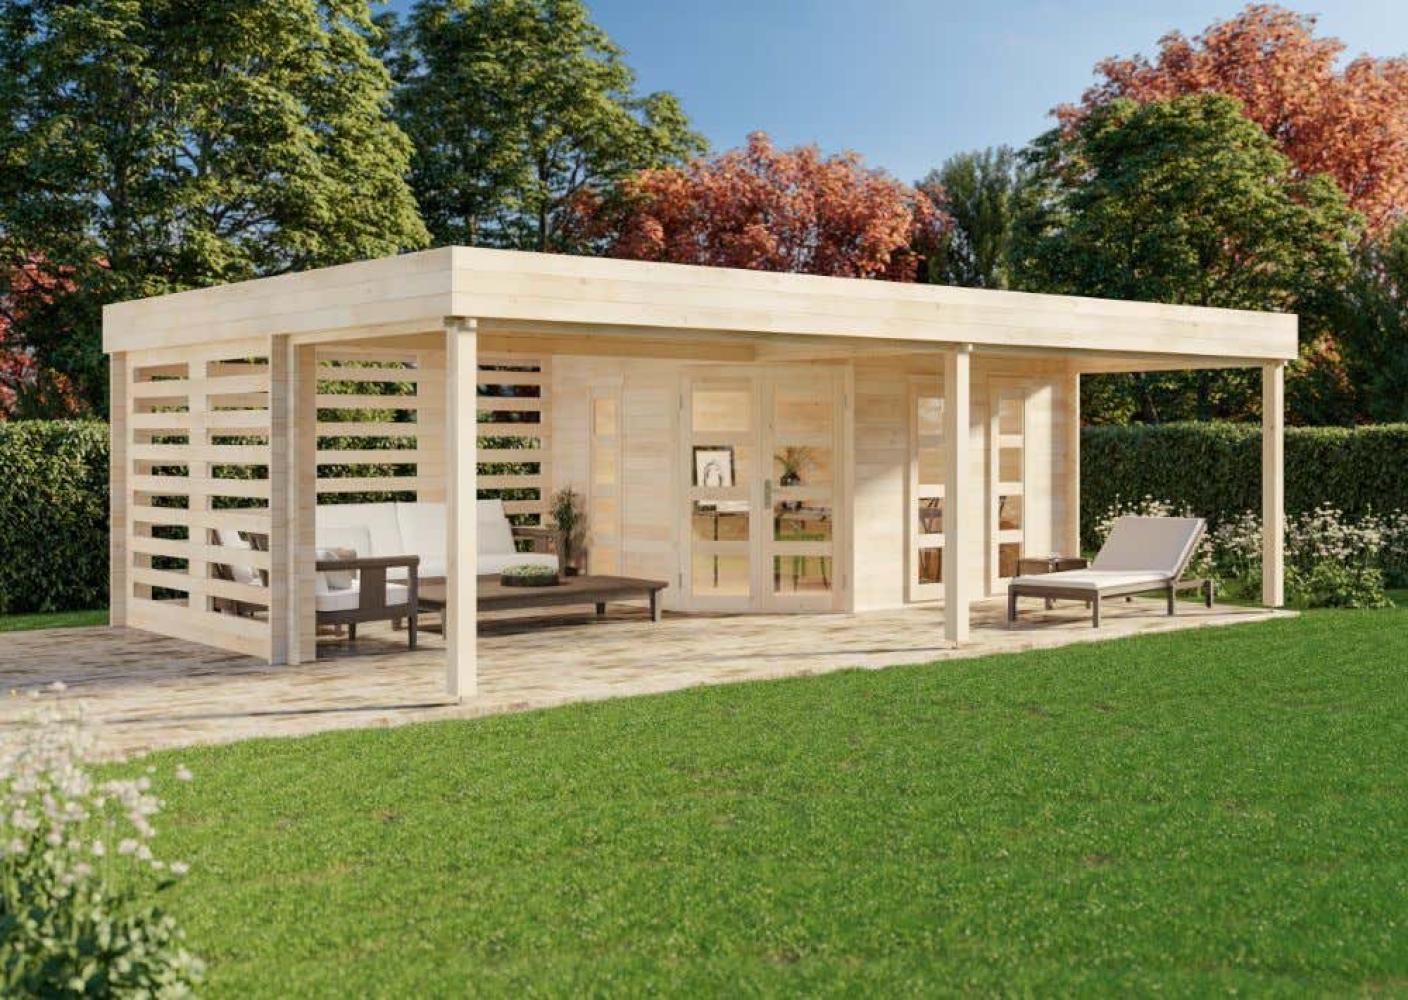 Alpholz Gartenhaus Panama-40 Gartenhaus aus Holz Holzhaus mit 40 mm Wandstärke inklusive Schleppdach Blockbohlenhaus mit Montagematerial Bild 1